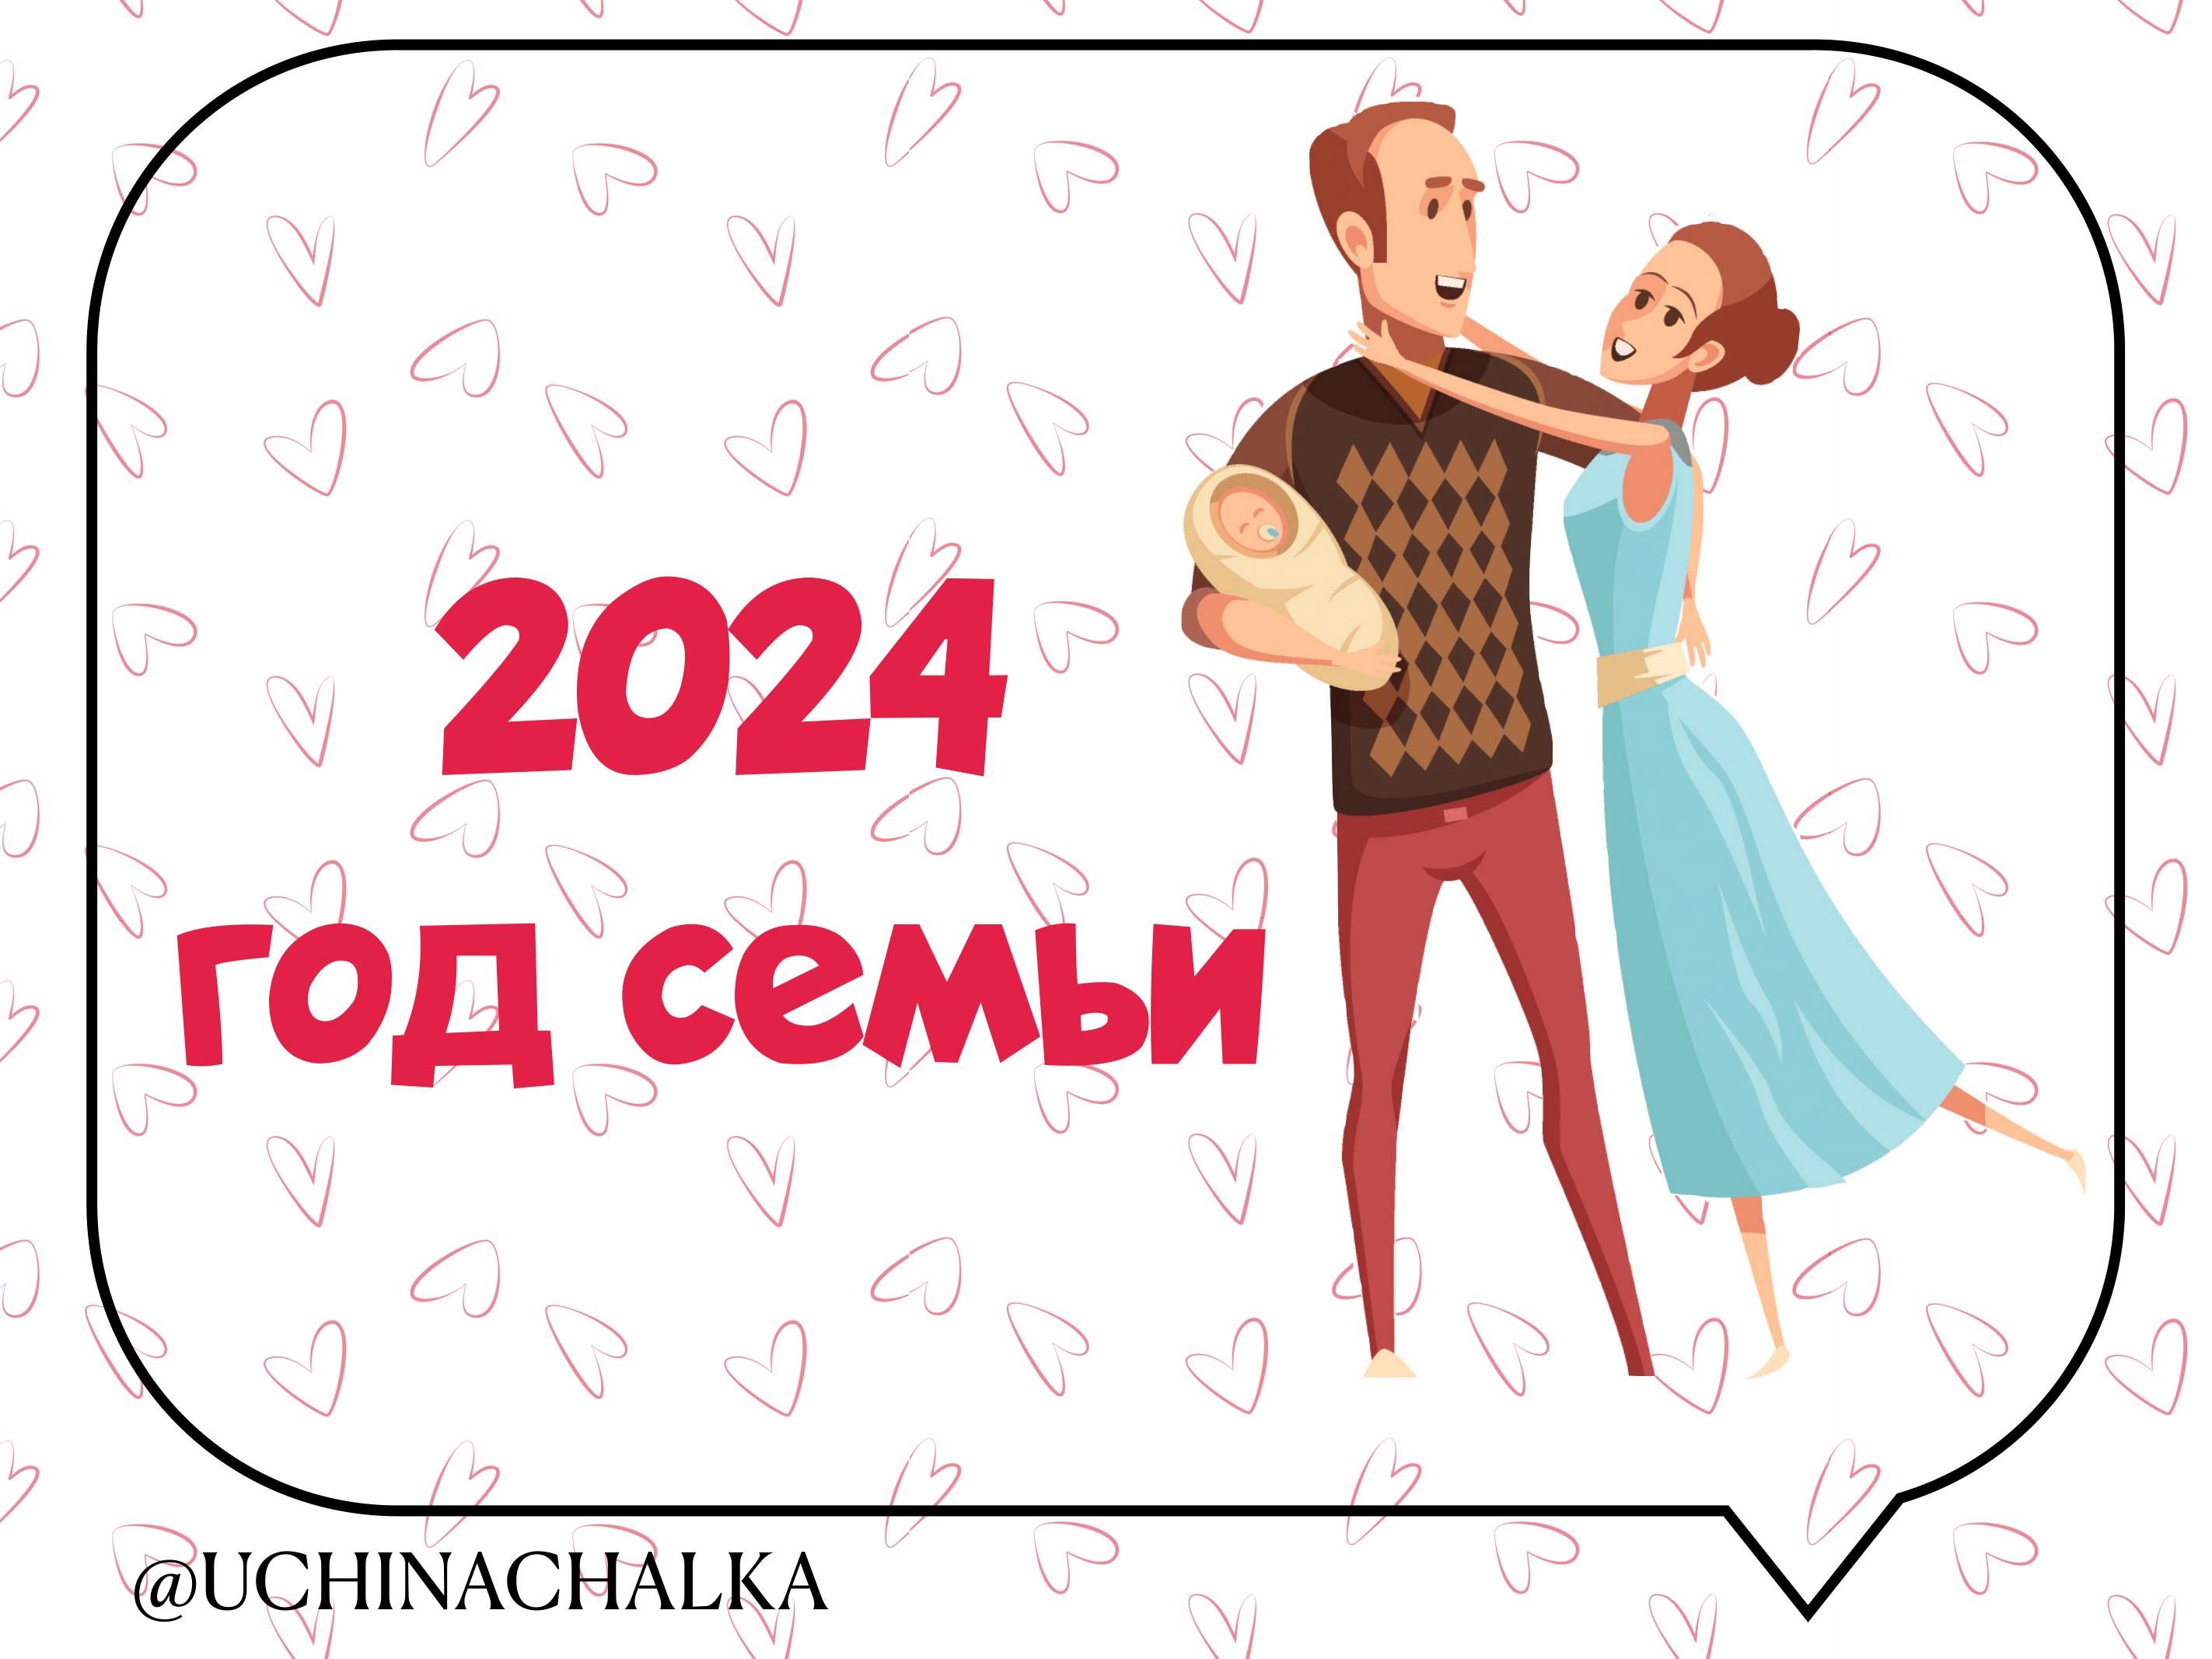 2024 -Год семьи